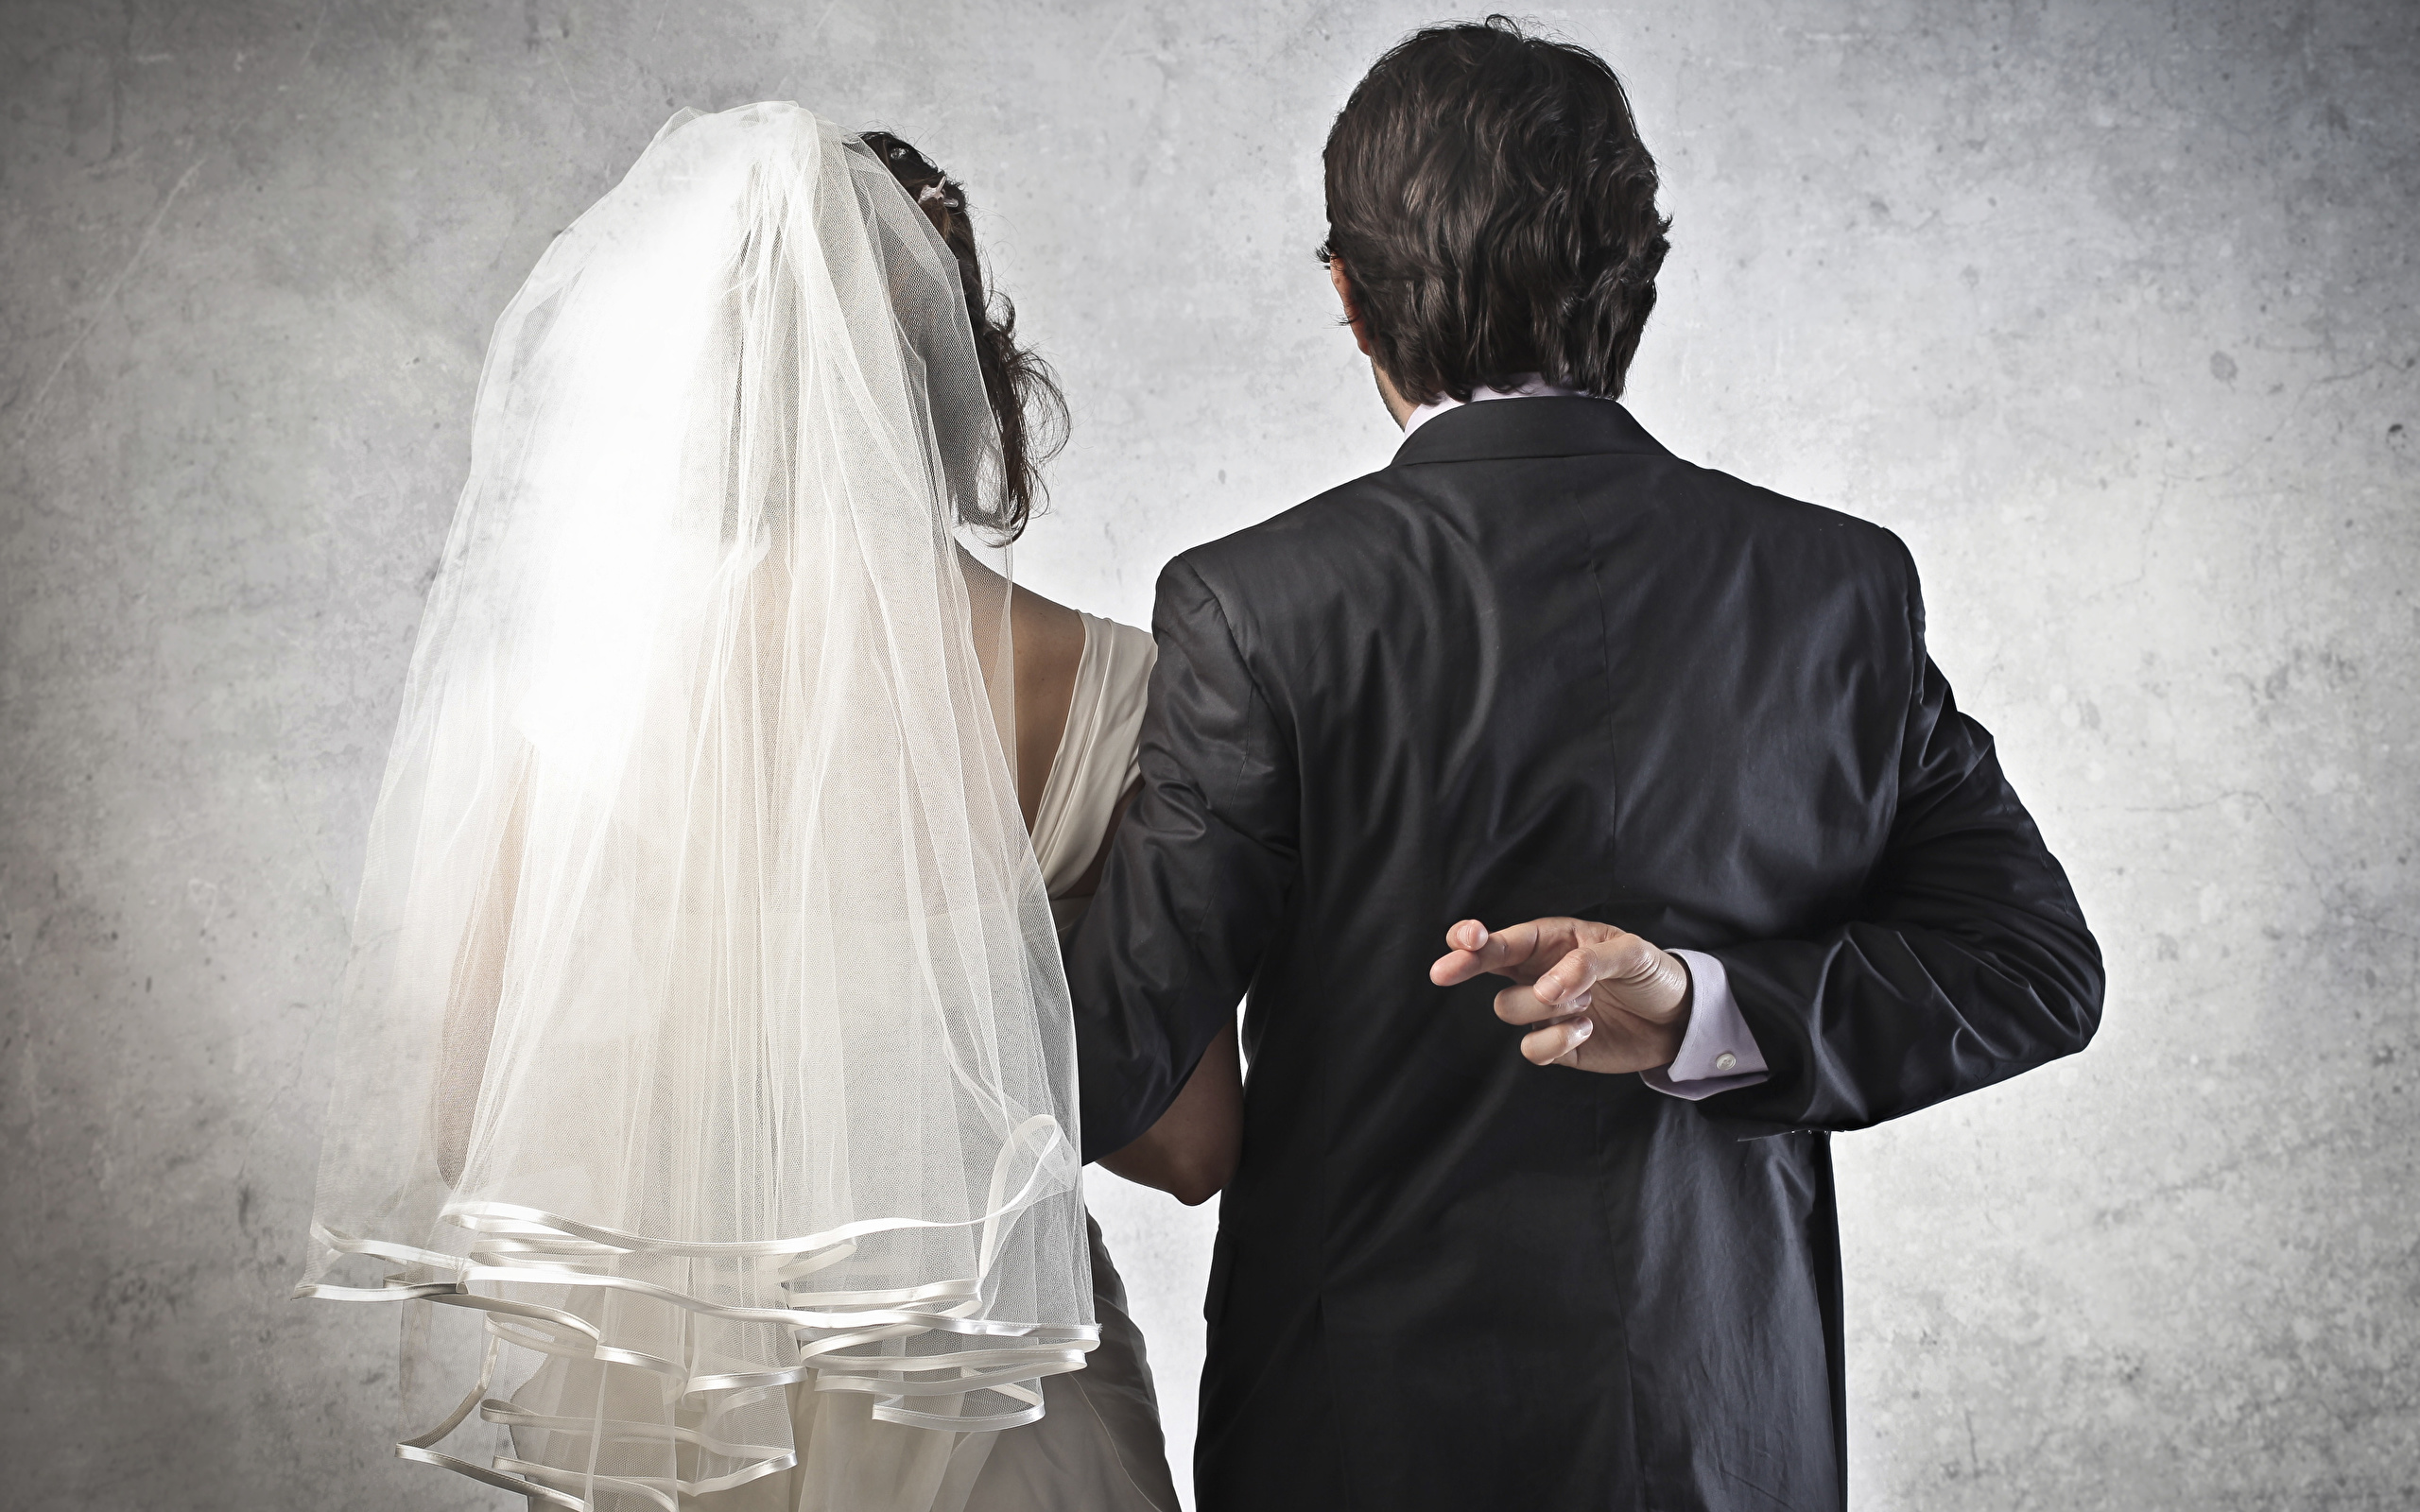 Изменяет жене перед свадьбой